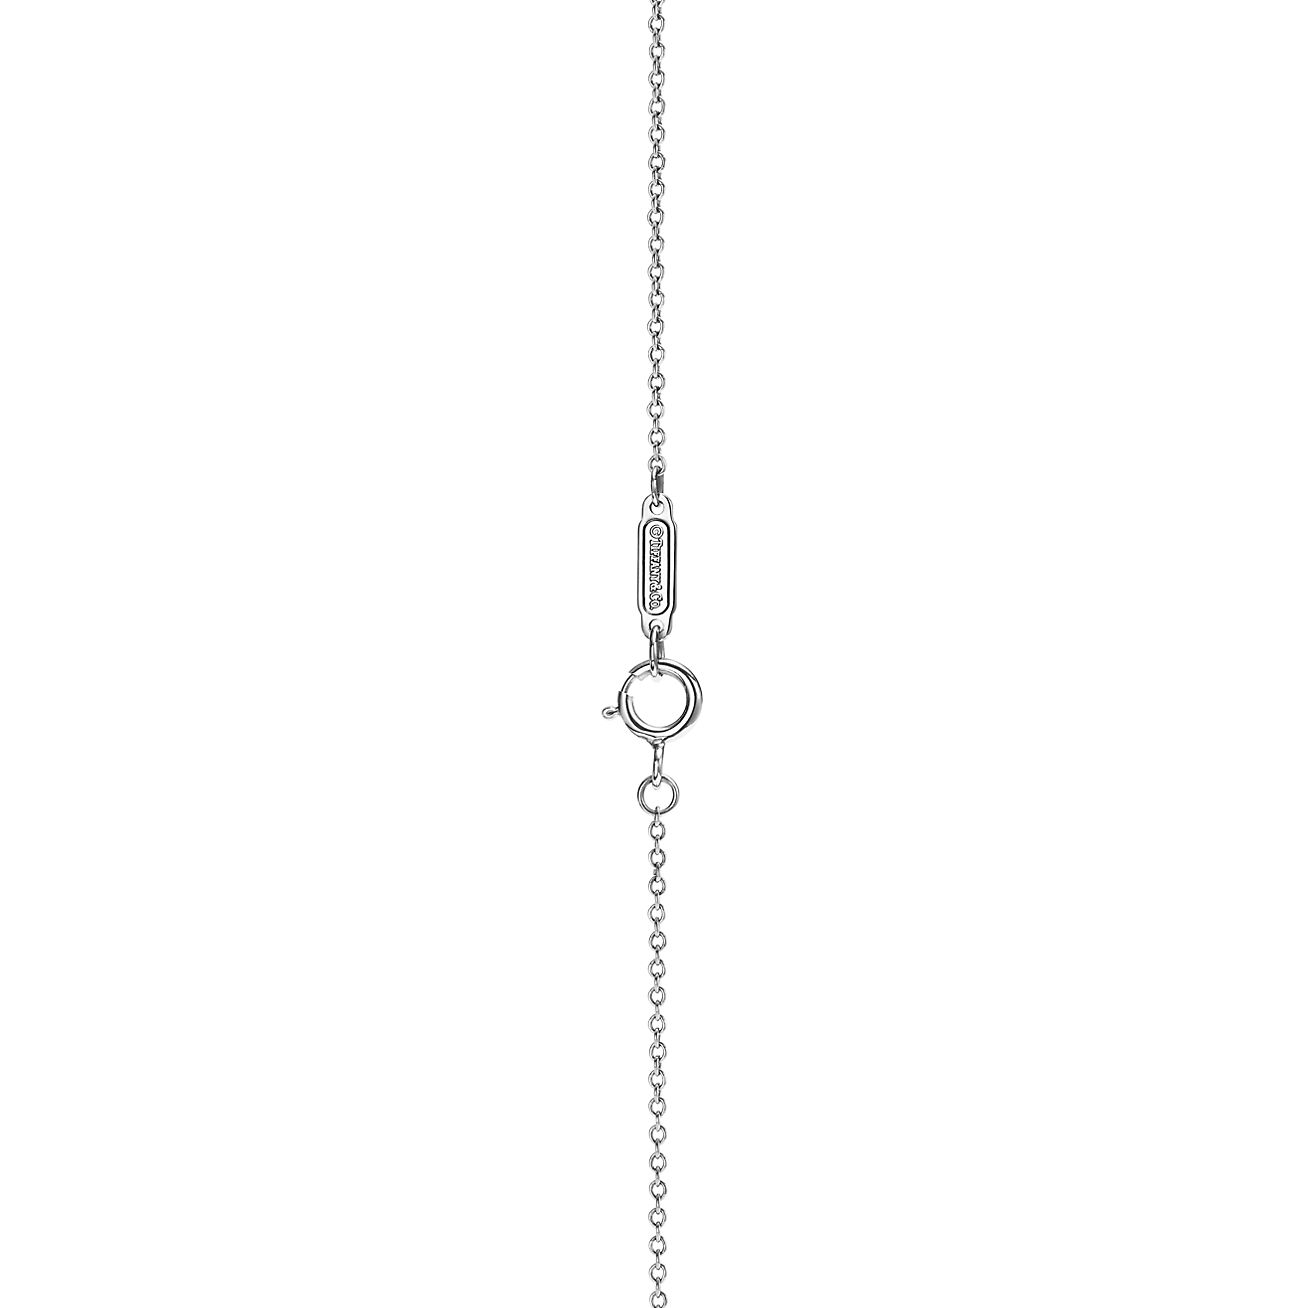 Revelar Plasticidad chisme Cadena en oro blanco de 18 quilates, 45.7 cm de largo. | Tiffany & Co.